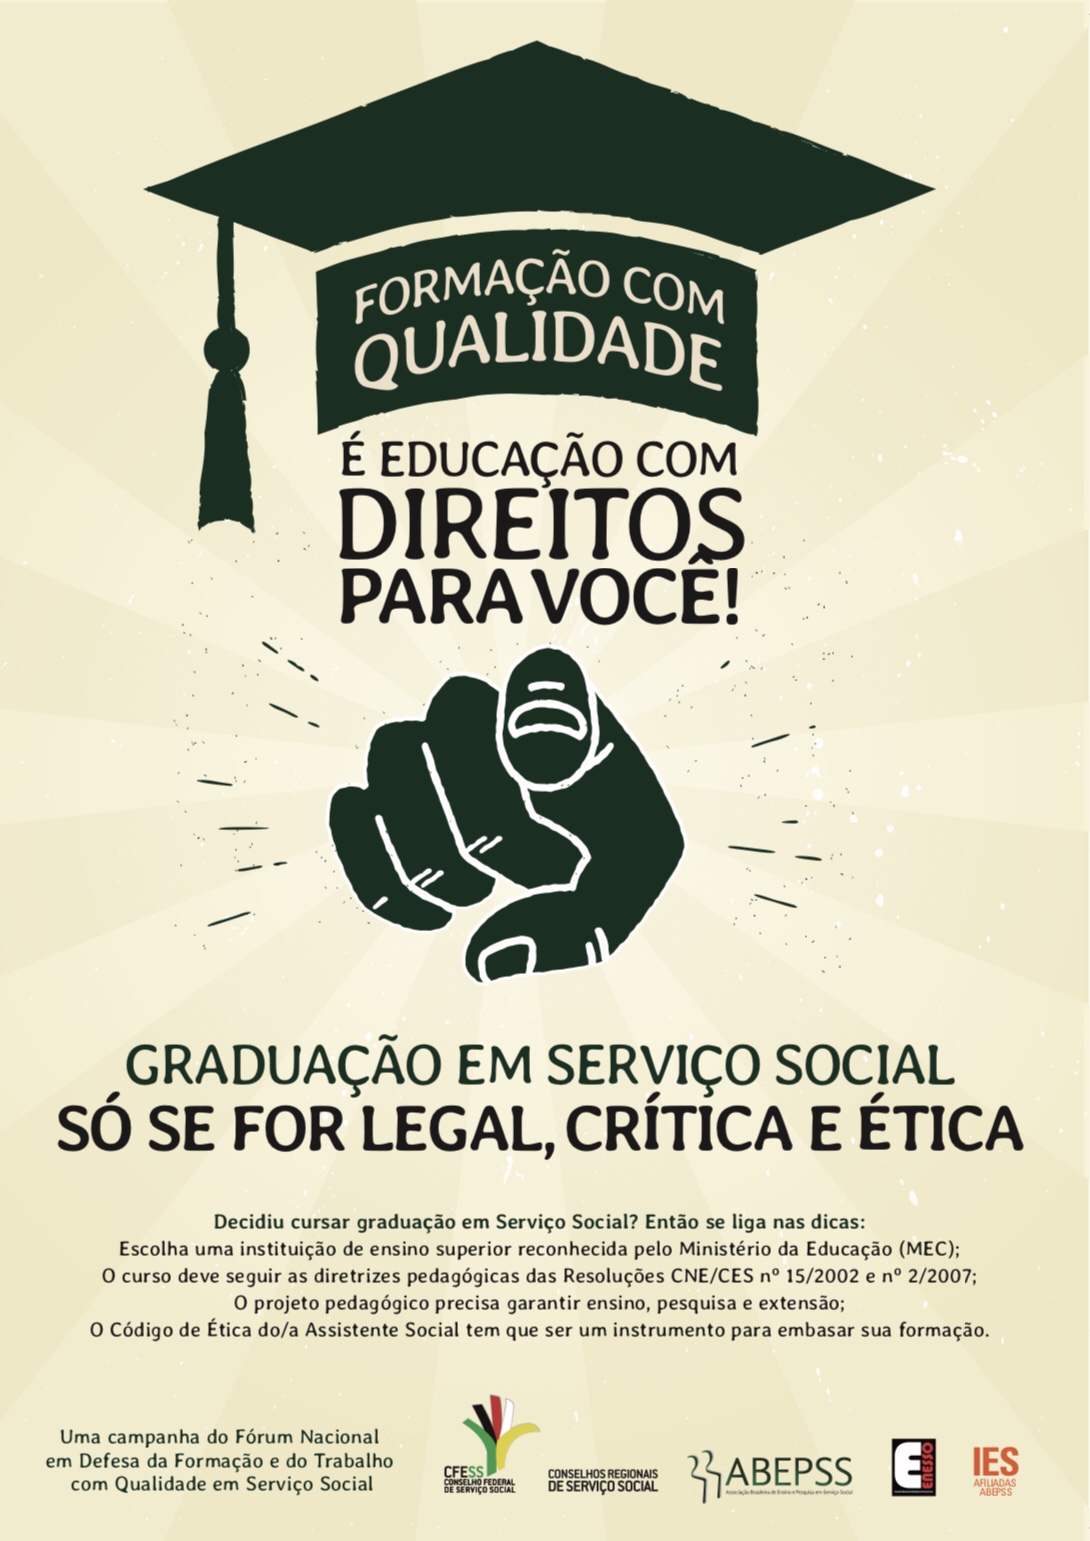 CRESS Sergipe apoia campanha em defesa da qualidade da formação dos cursos de Serviço Social